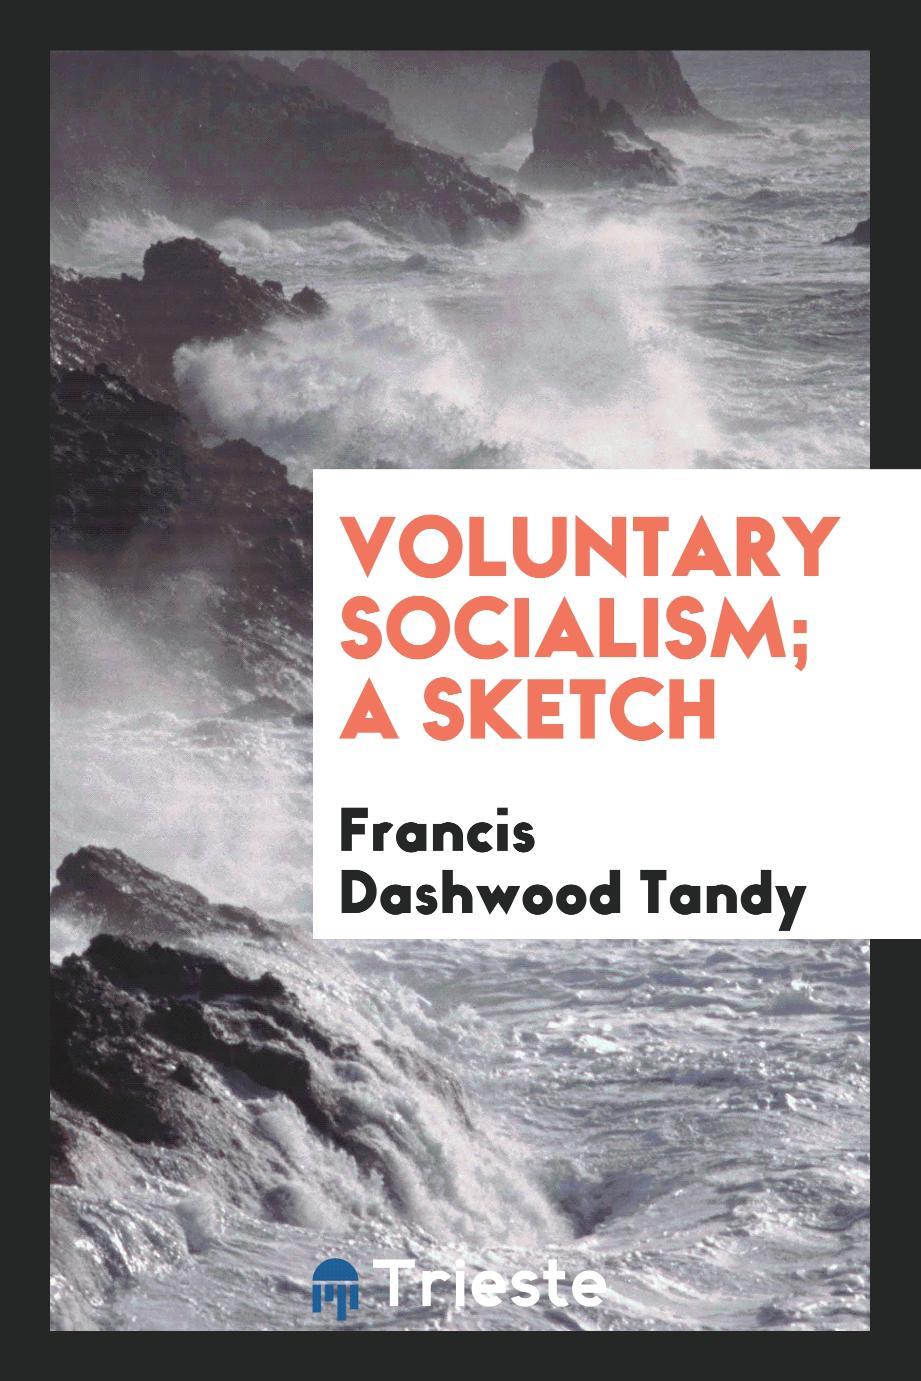 Francis Dashwood Tandy - Voluntary socialism; a sketch